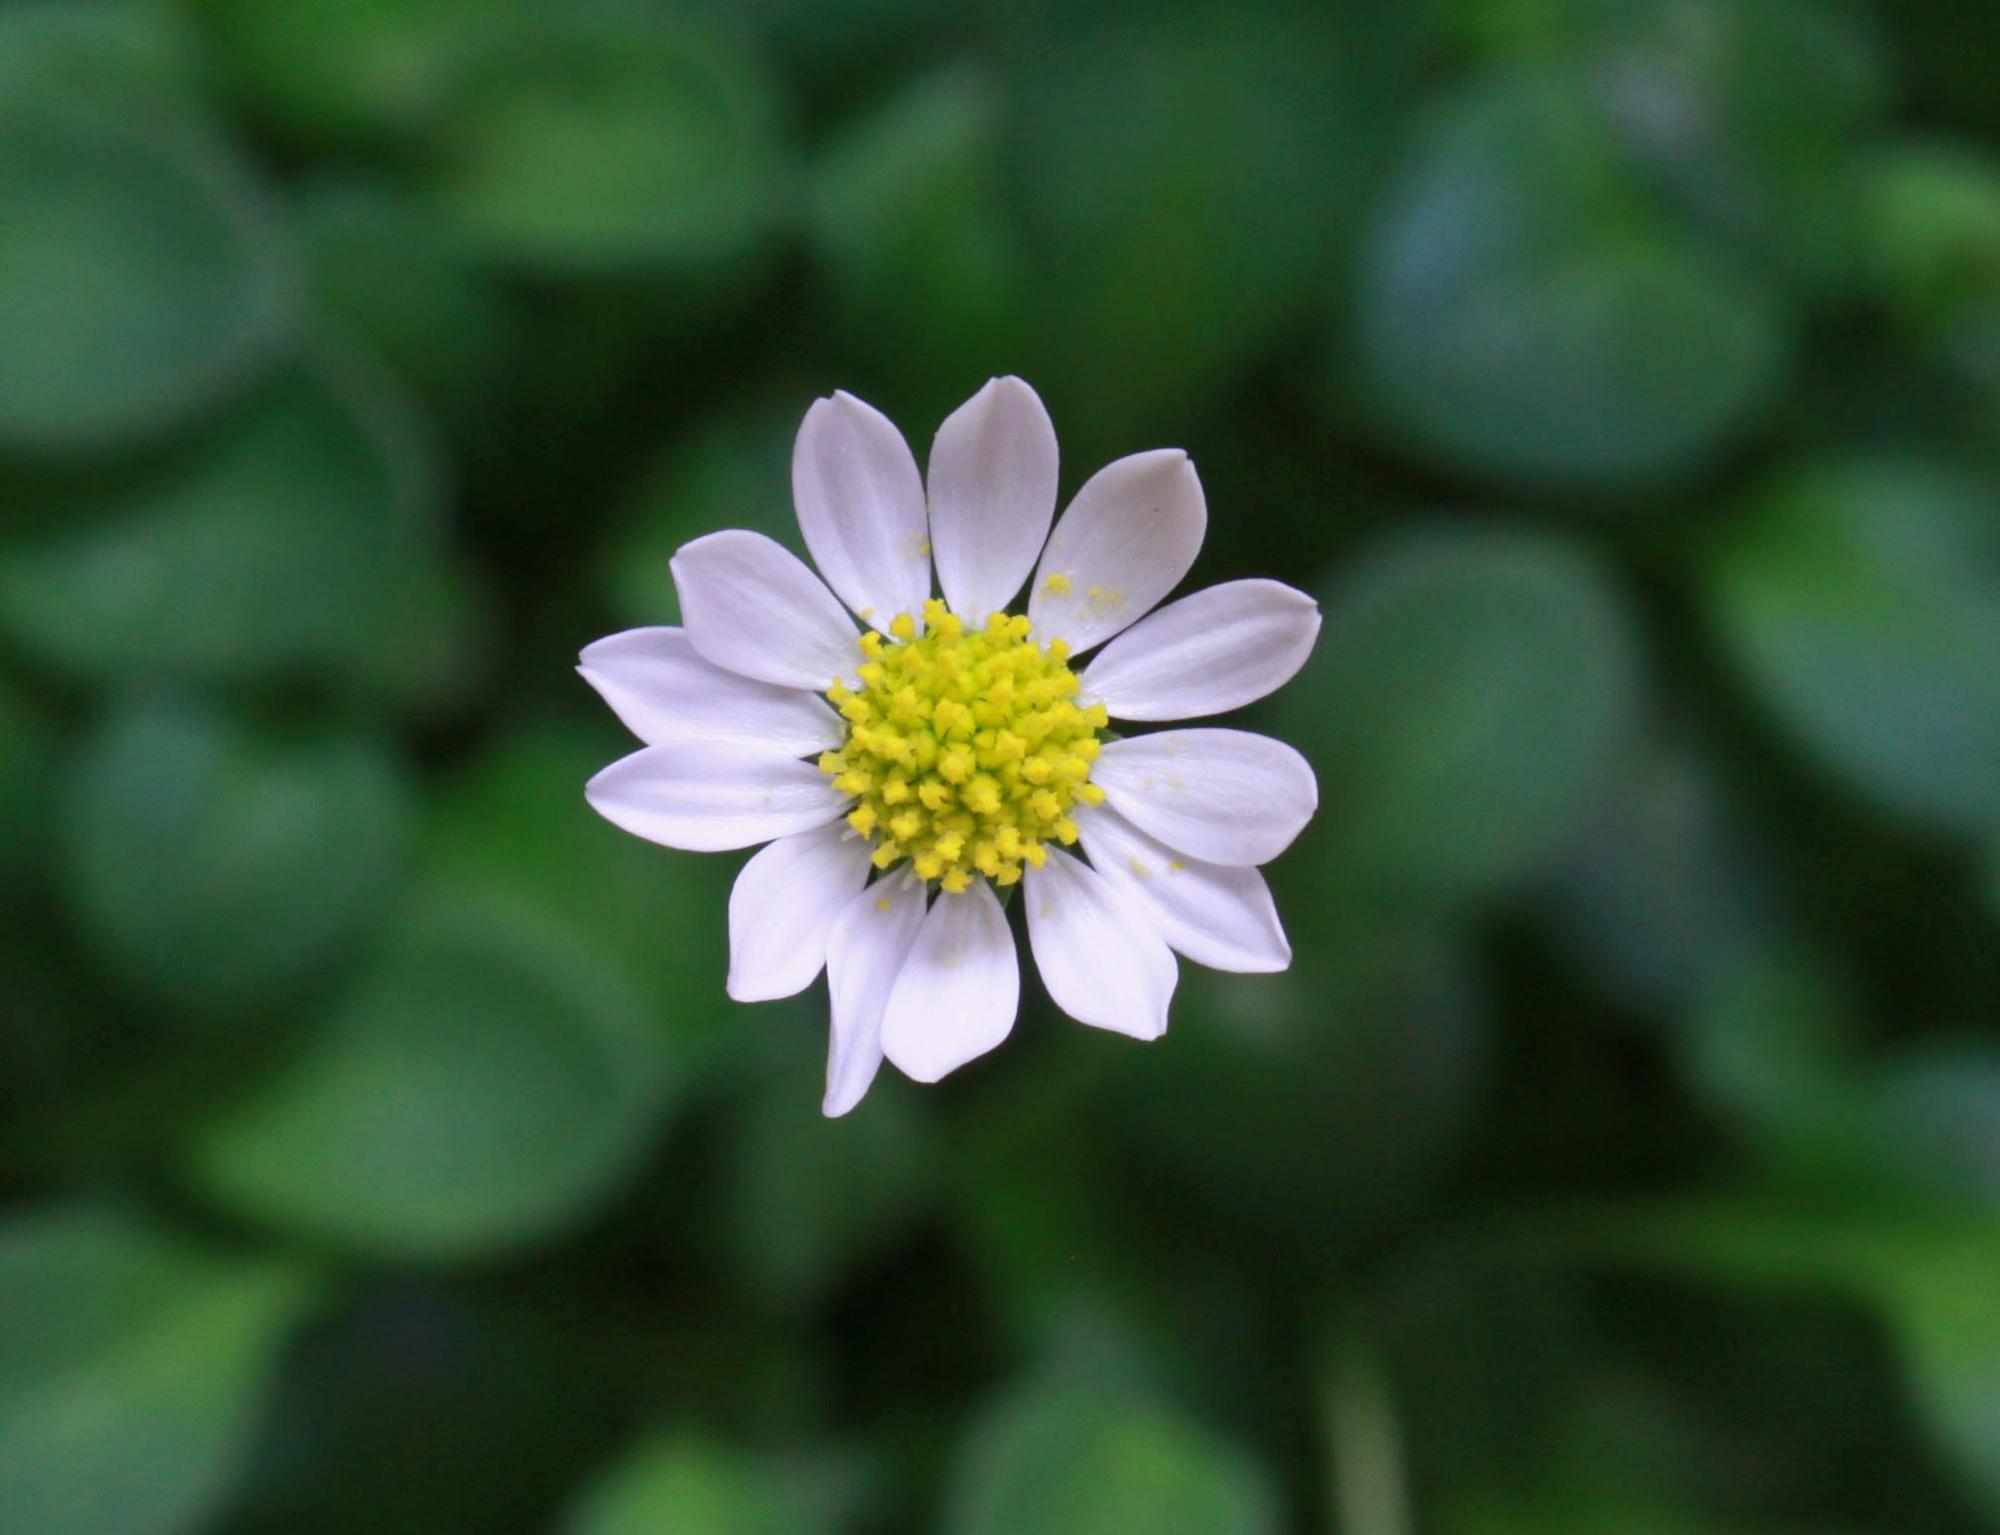 A miniature mat daisy. Tiny white petals and daisy-like yellow center